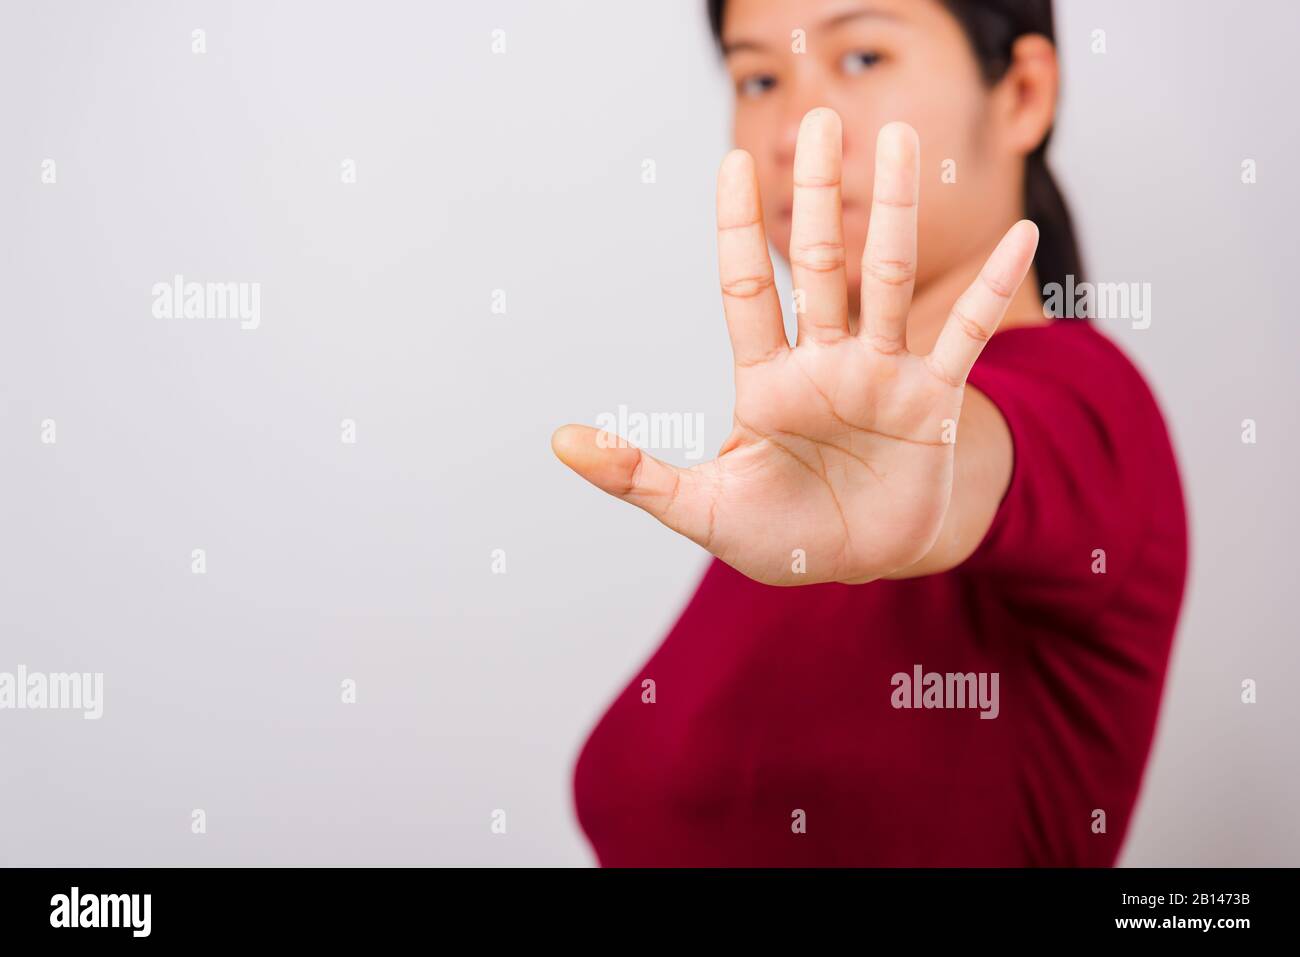 Asian bella donna prurito la sua mano distesa mostrando stop gesture viso anteriore, messa a fuoco sulla mano su sfondo bianco con spazio di copia Foto Stock